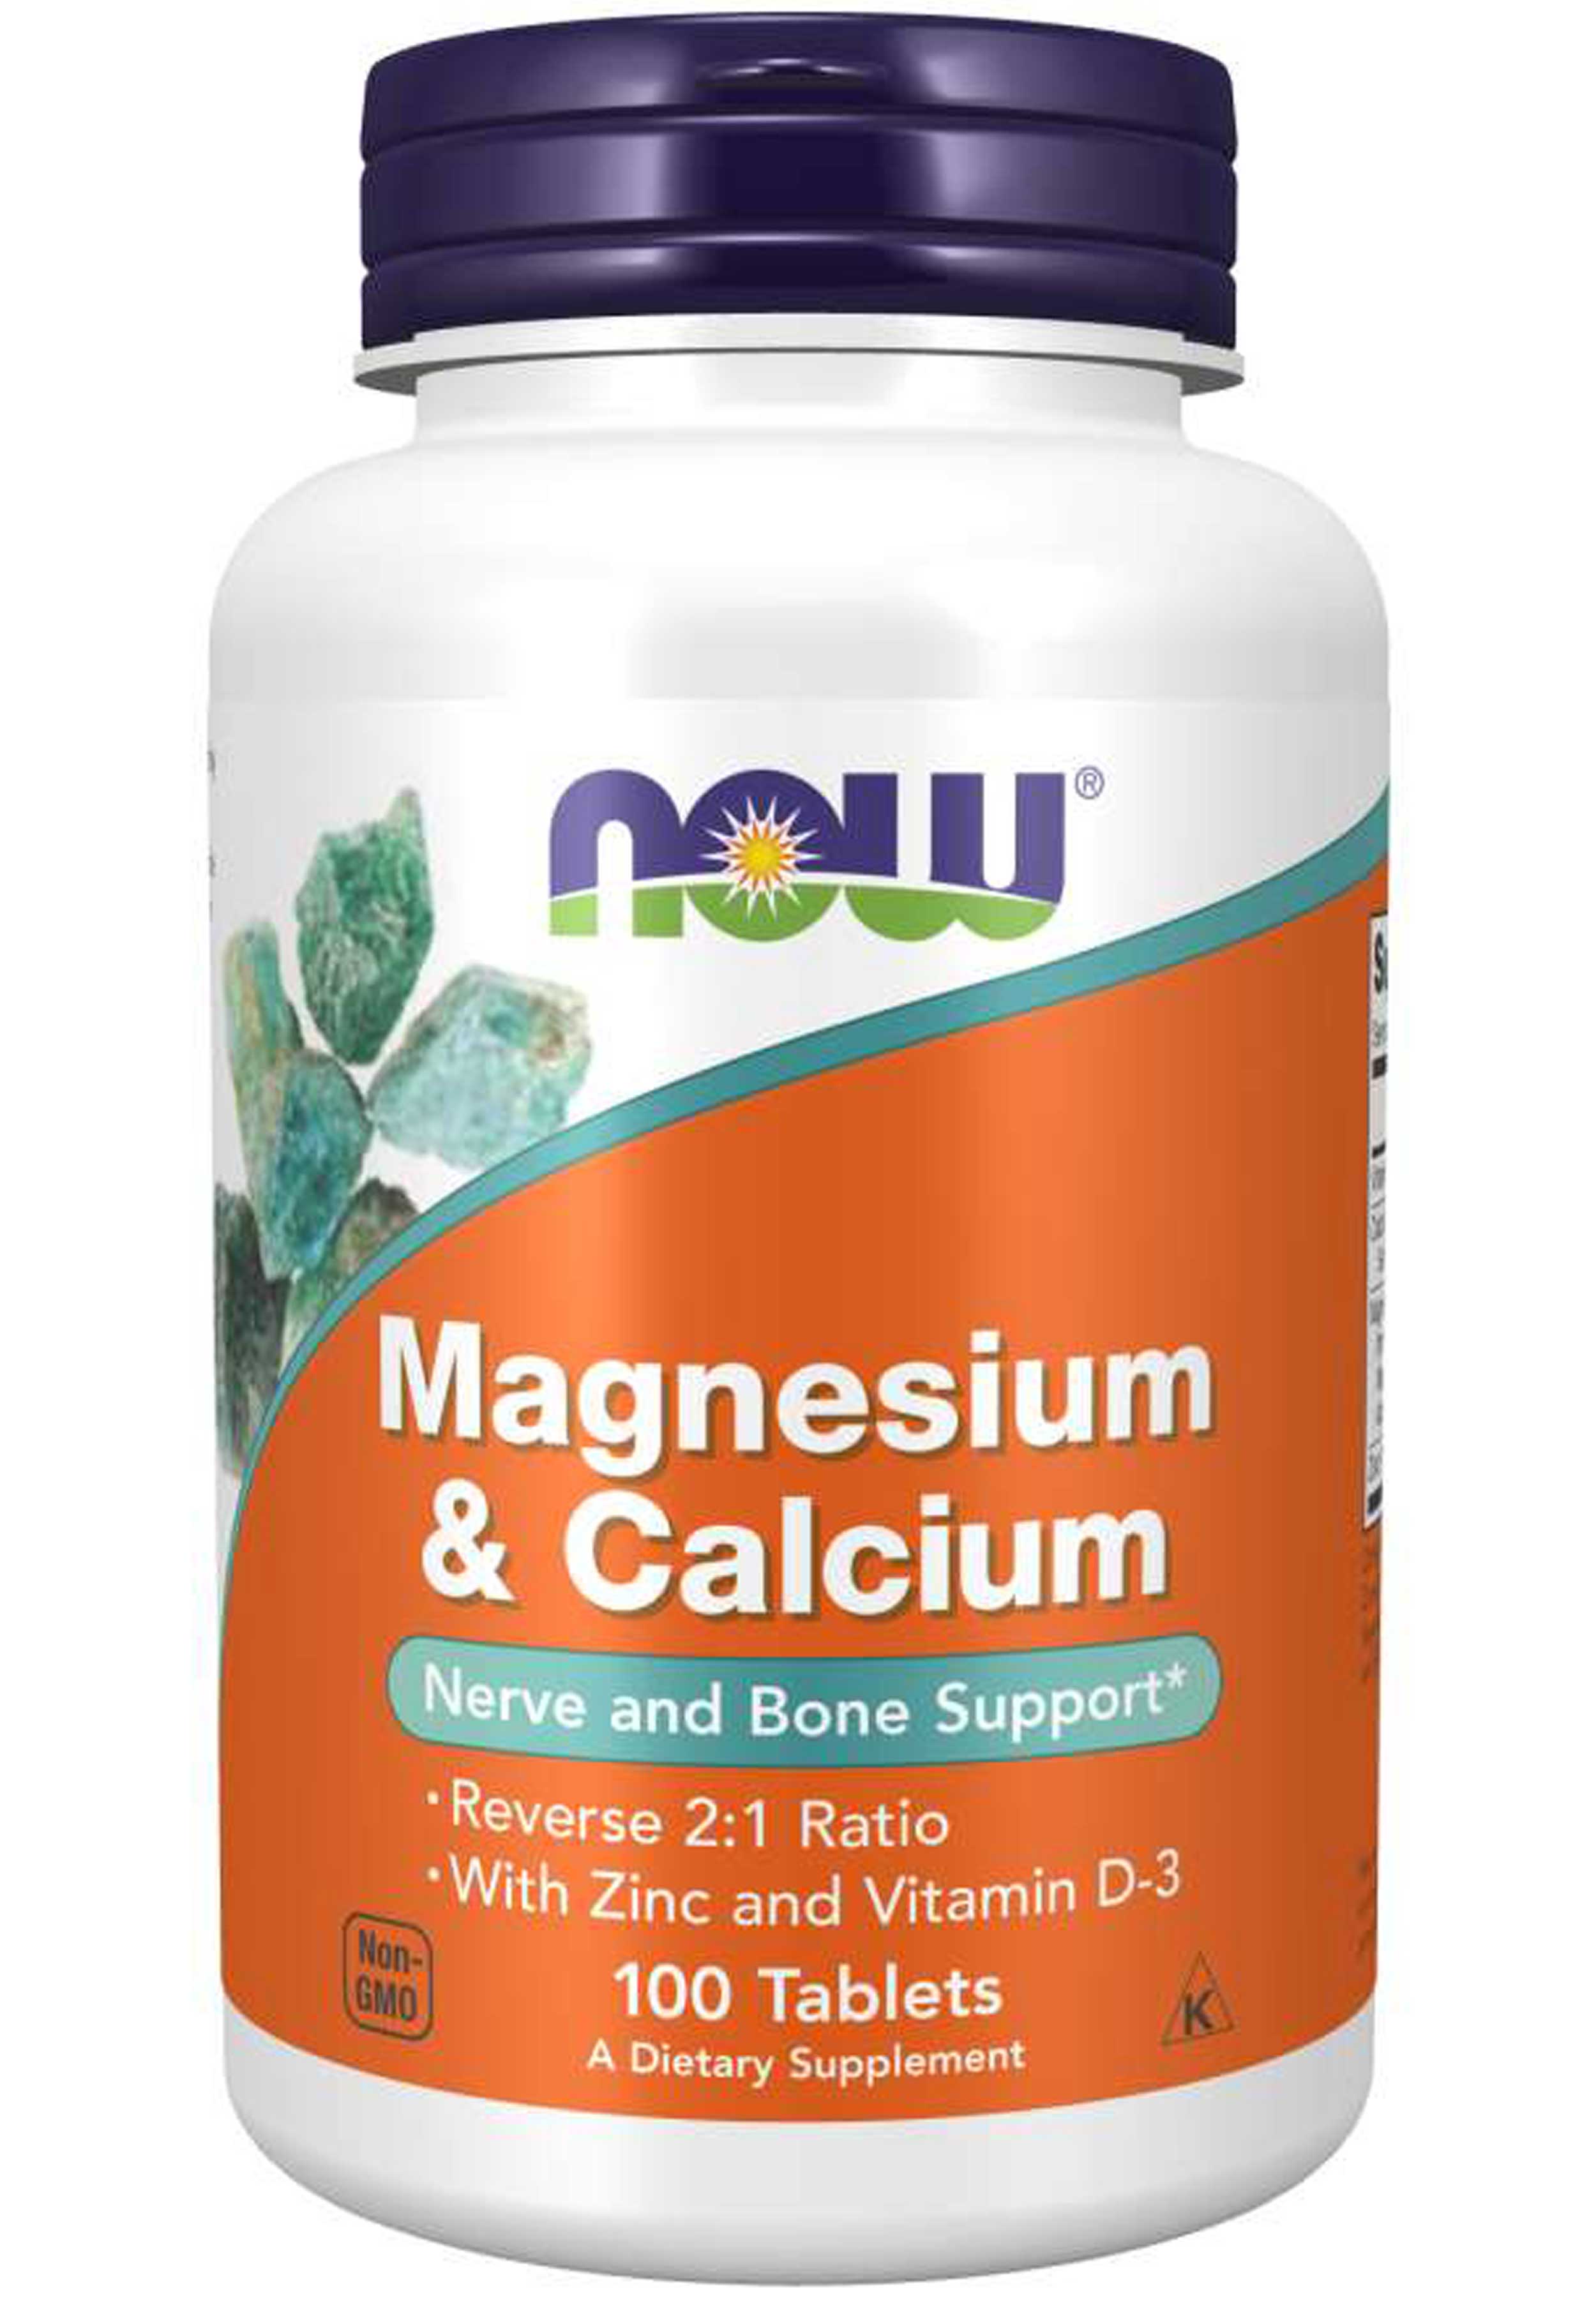 NOW Magnesium & Calcium 2:1 Ratio